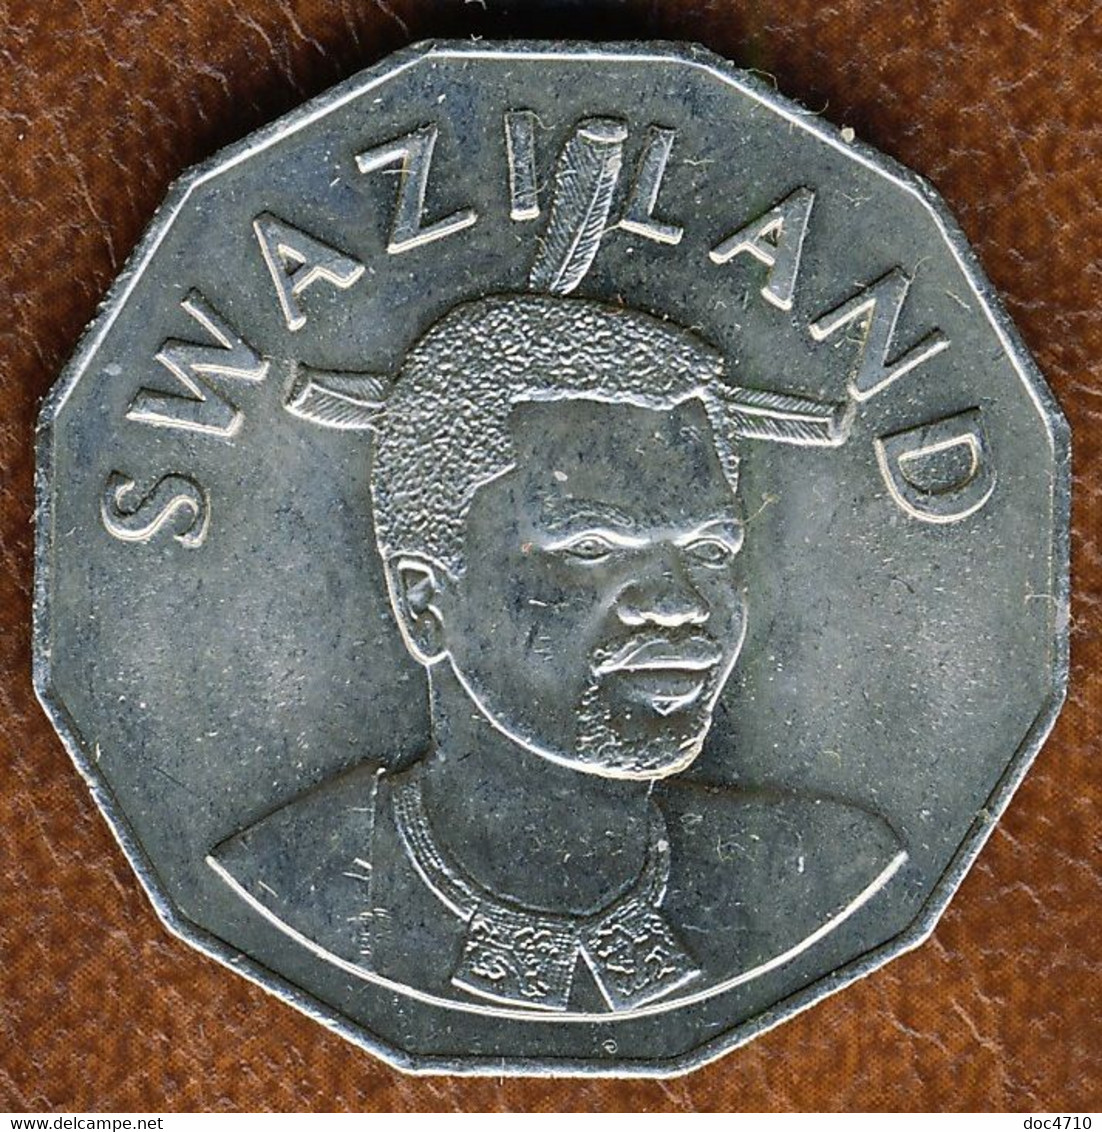 Eswatini-Swaziland 50 Cents 2007, KM#52, AUnc - Swaziland